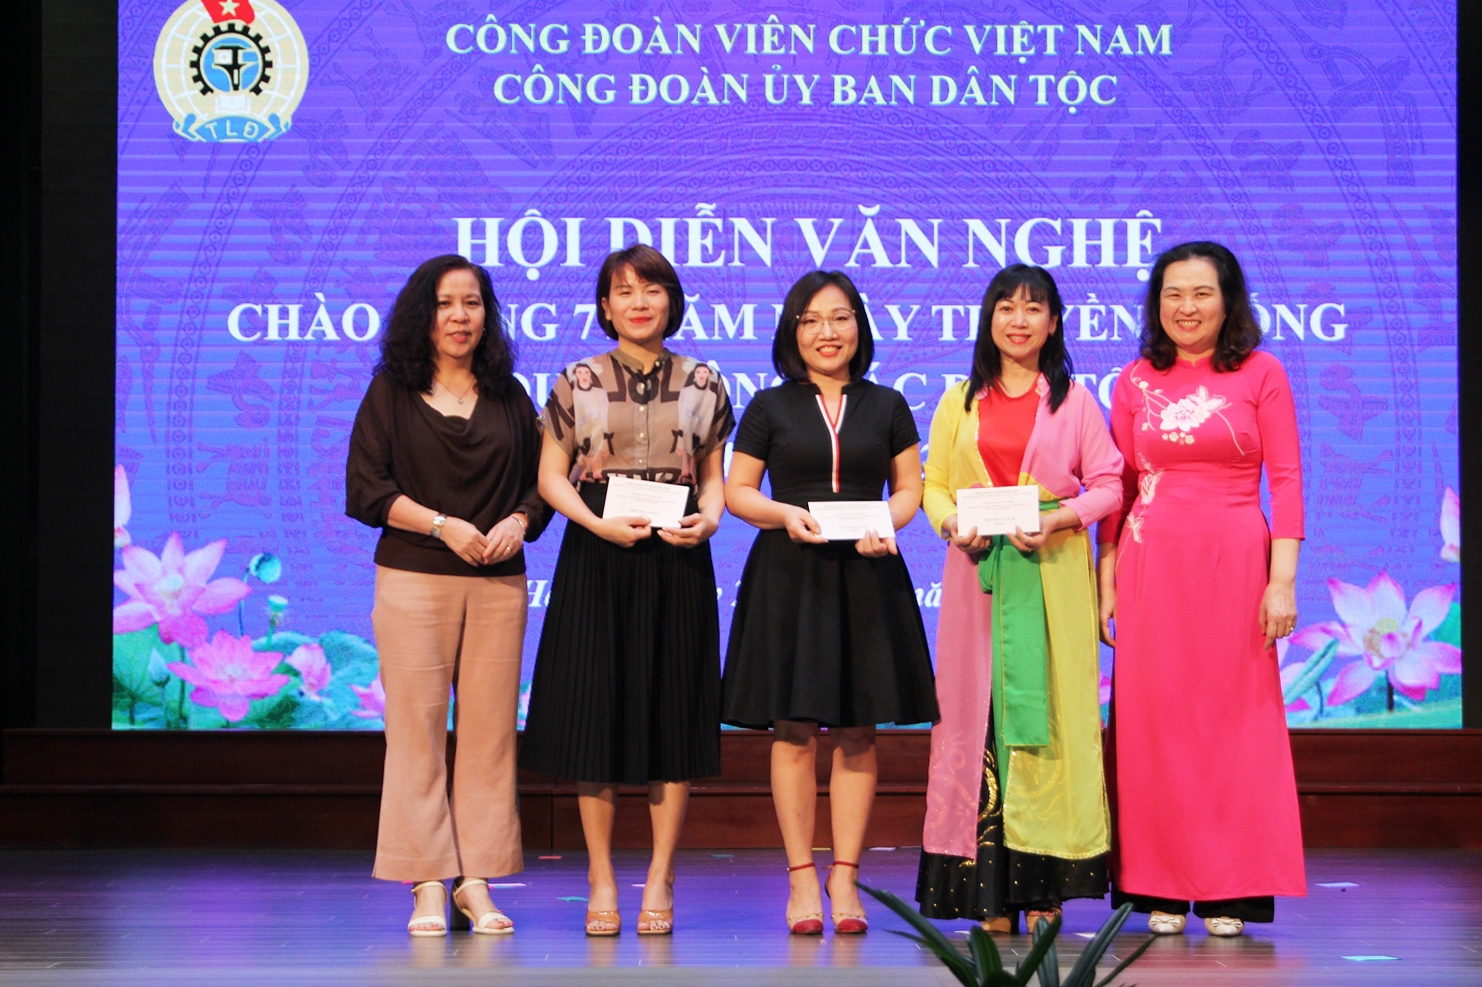 Bà Lương Thị Thu Hằng - Phó Tổng Biên tập Tạp chí Dân tộc và bà Bế Thị Hồng Vân - Phó Vụ trưởng Vụ Chính sách Dân tộc trao giải cho các đơn vị đoạt giải ở thể loại múa